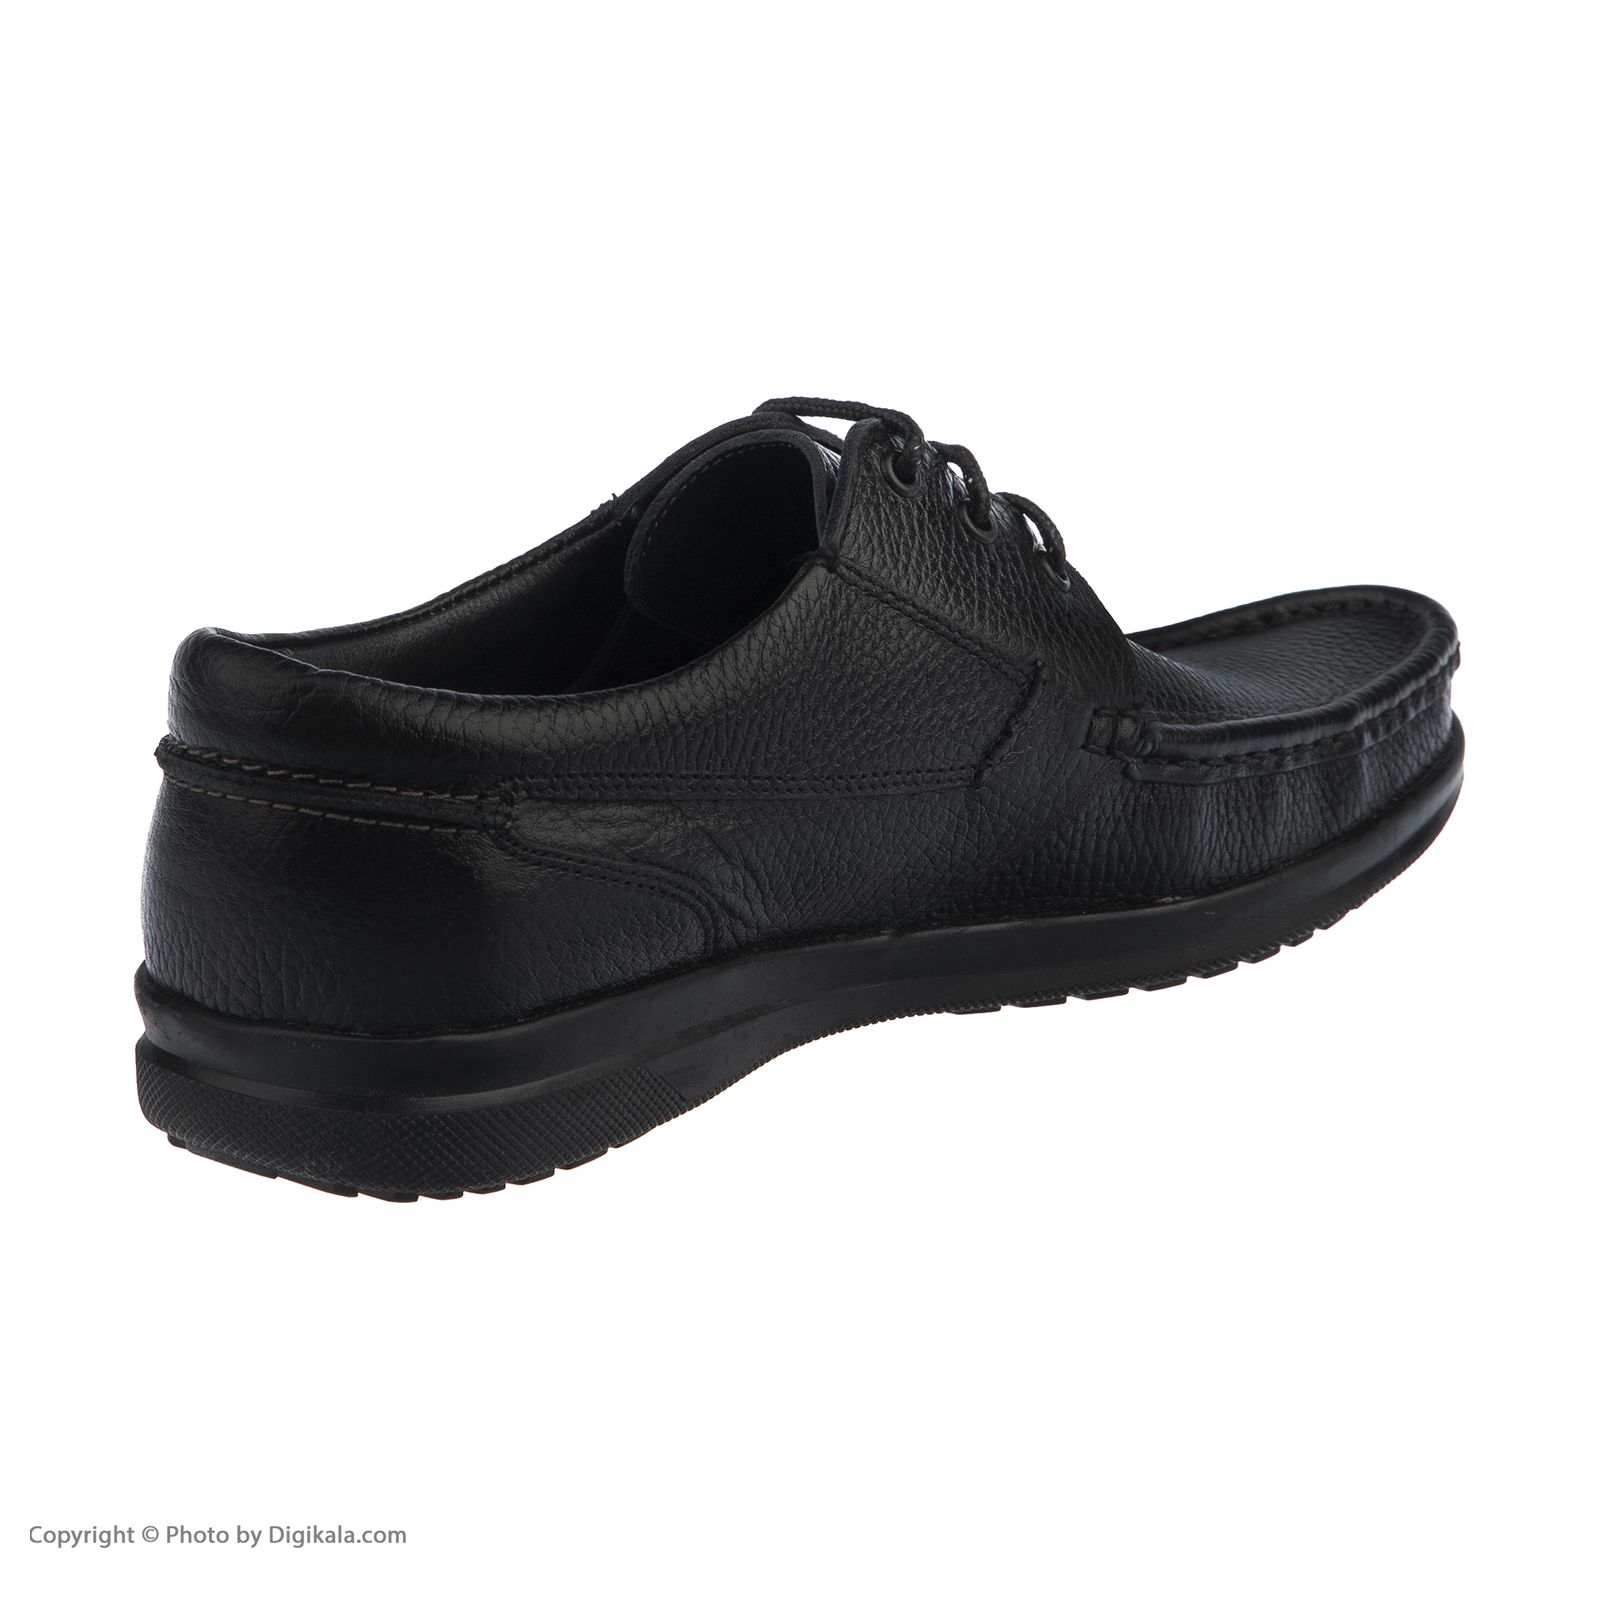  کفش روزمره مردانه واران مدل 7092c503101 -  - 5